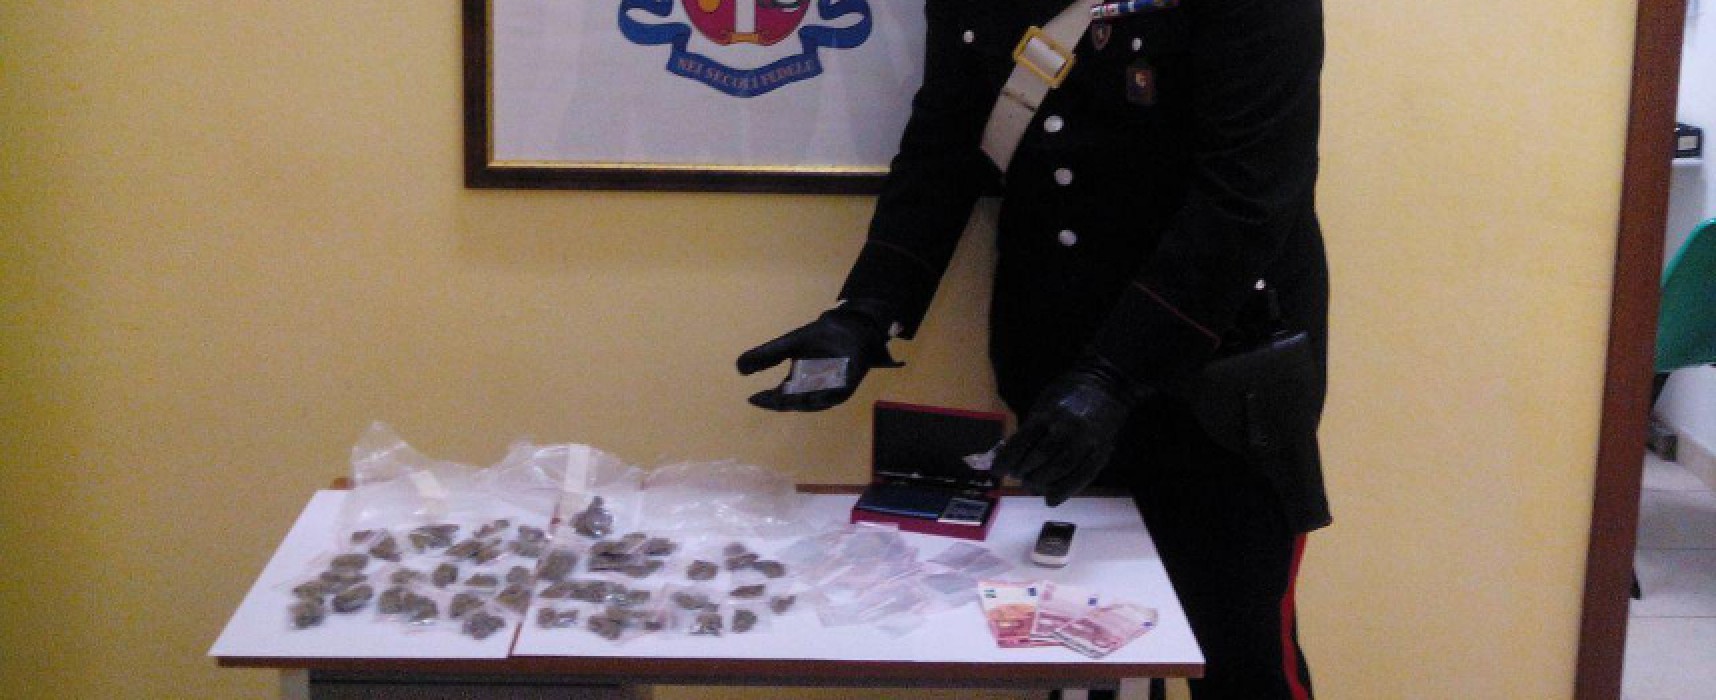 21enne biscegliese vende dose di marijuana a minore. Arrestato dai Carabinieri